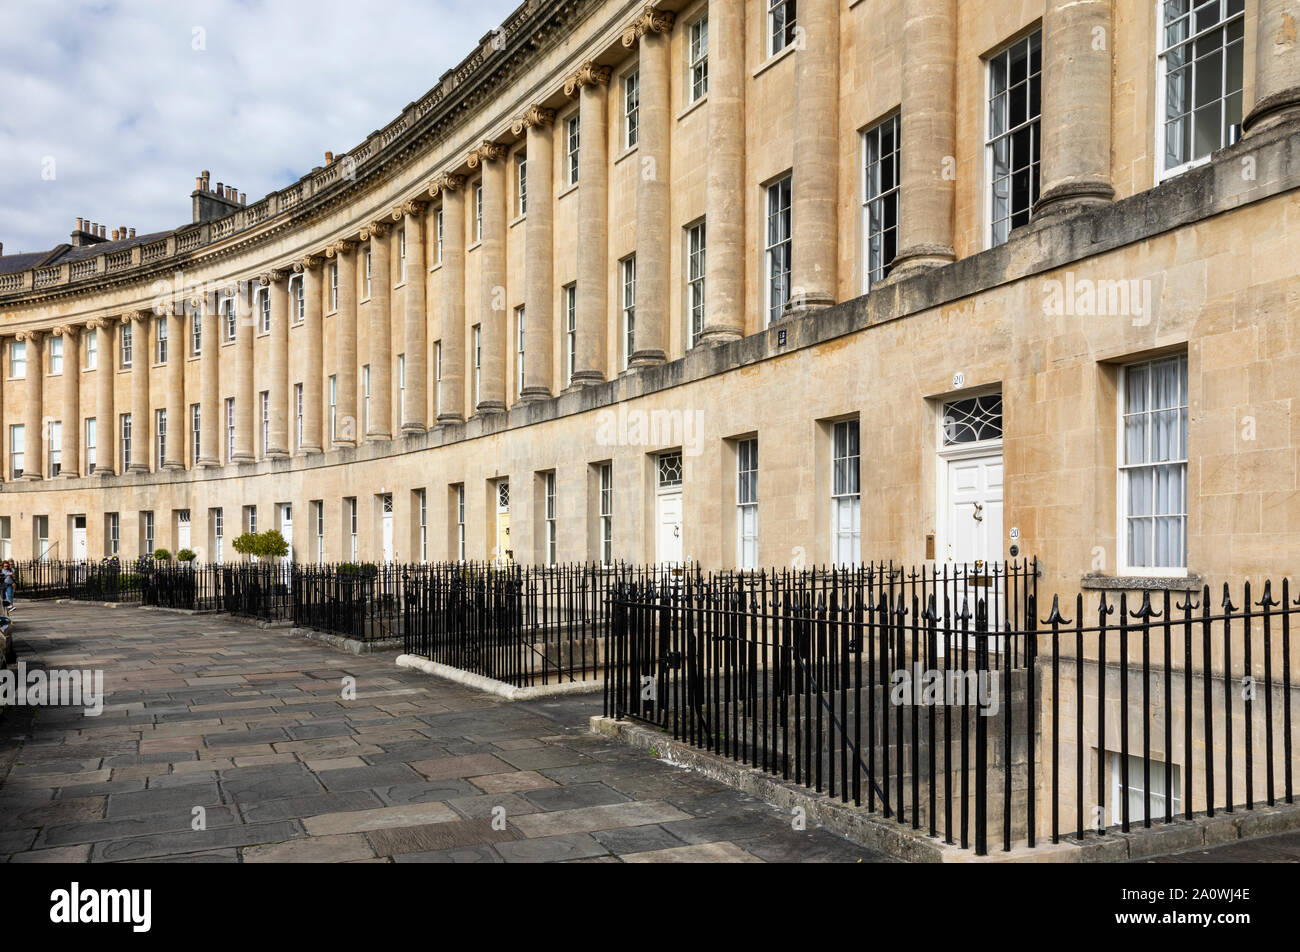 Architettura georgiana del XVIII secolo della Royal Crescent, Città di Bath, Somerset, Inghilterra, Regno Unito. Patrimonio dell'umanità dell'UNESCO. Foto Stock